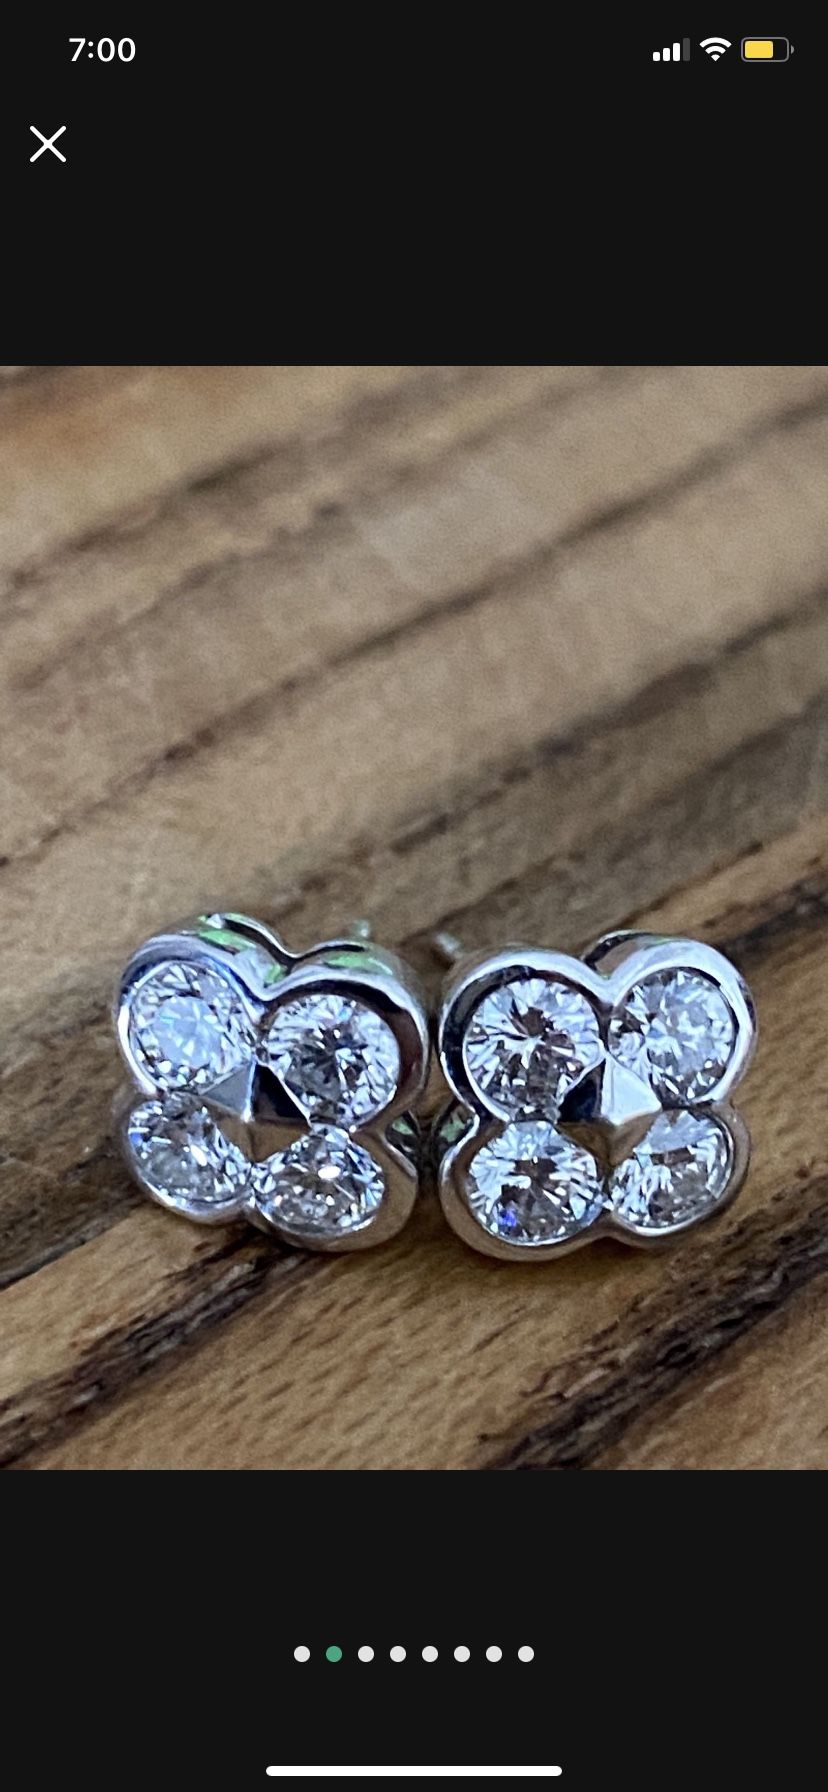 20 Point Diamond/ Silver Earrings 